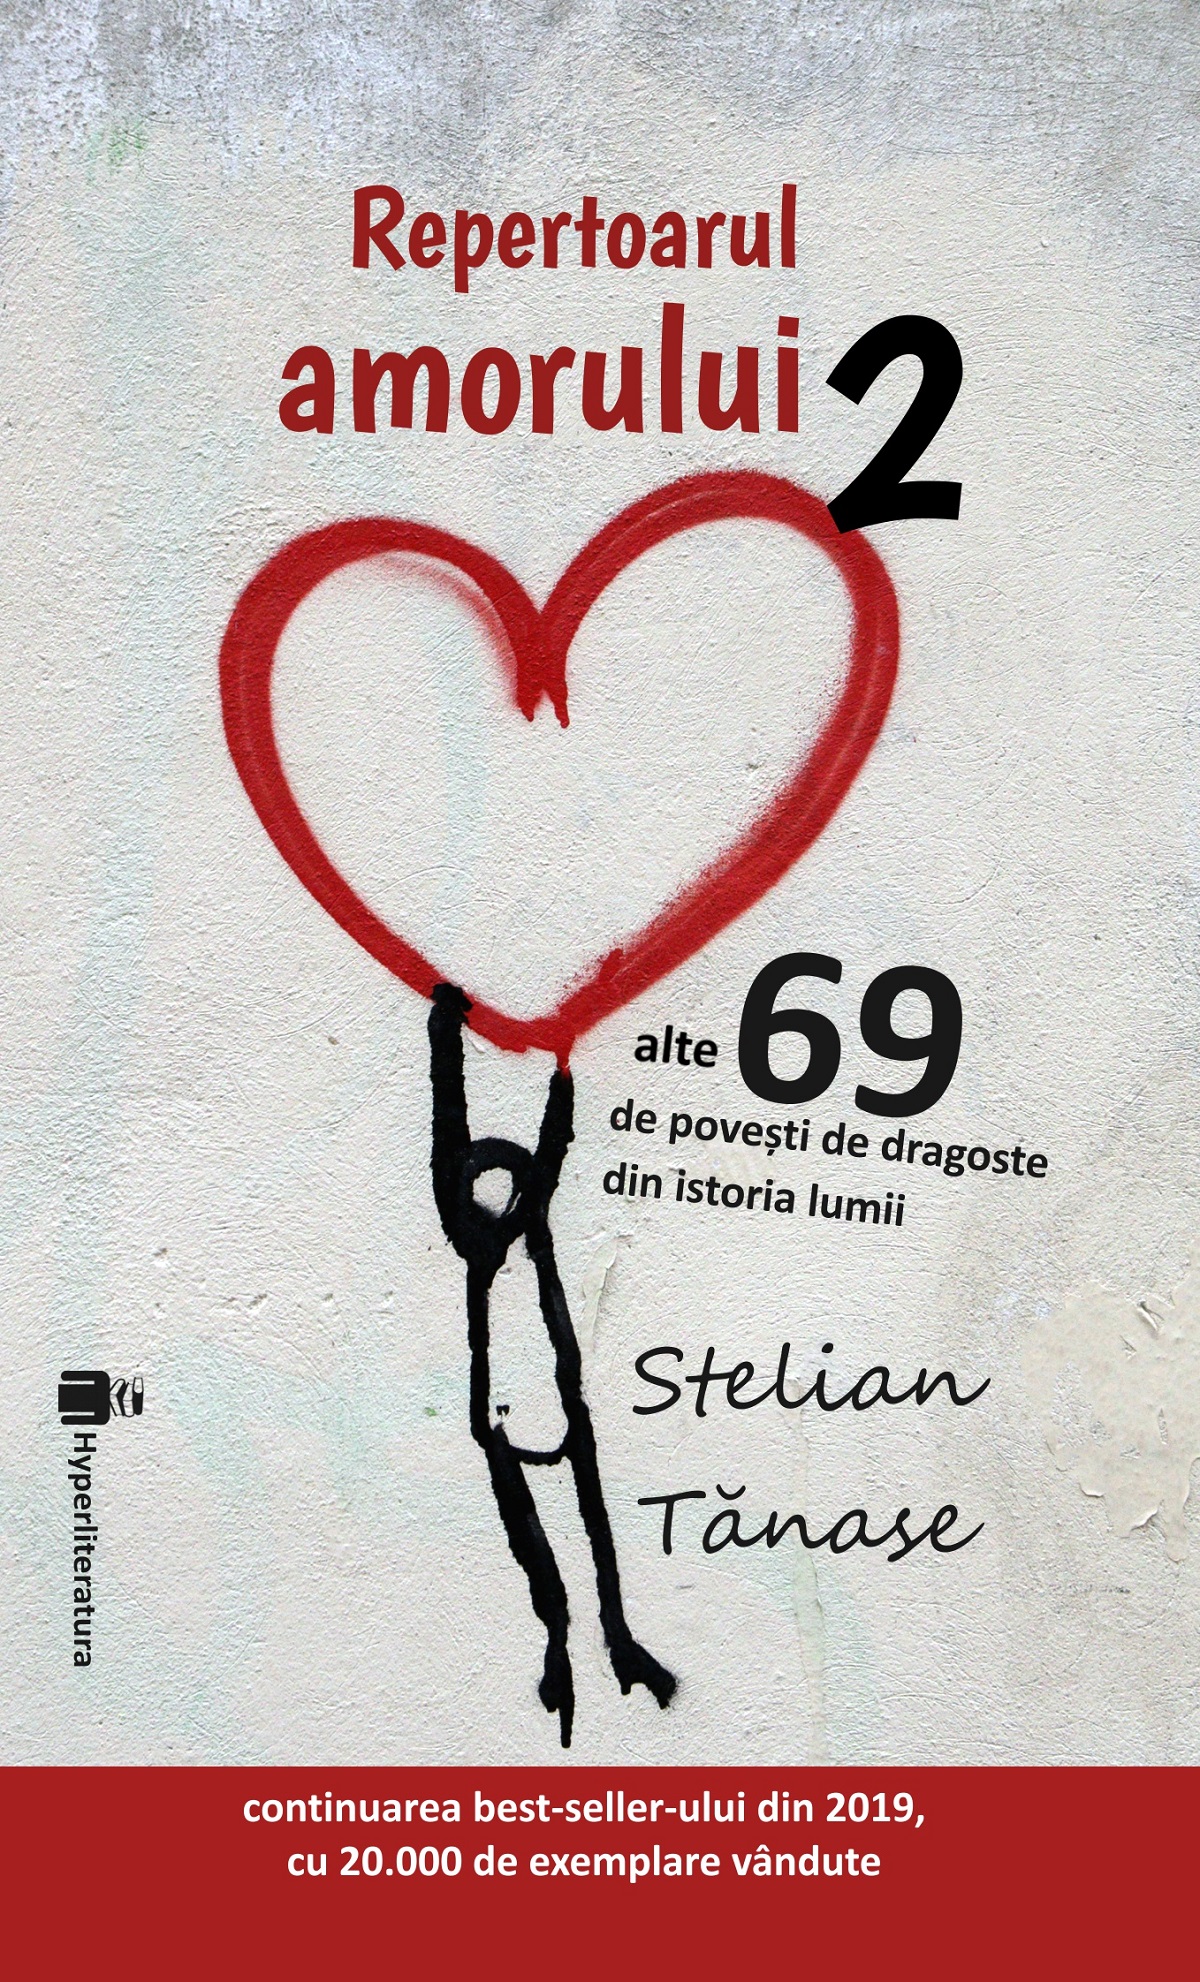 Repertoarul amorului | Stelian Tanase carturesti.ro imagine 2022